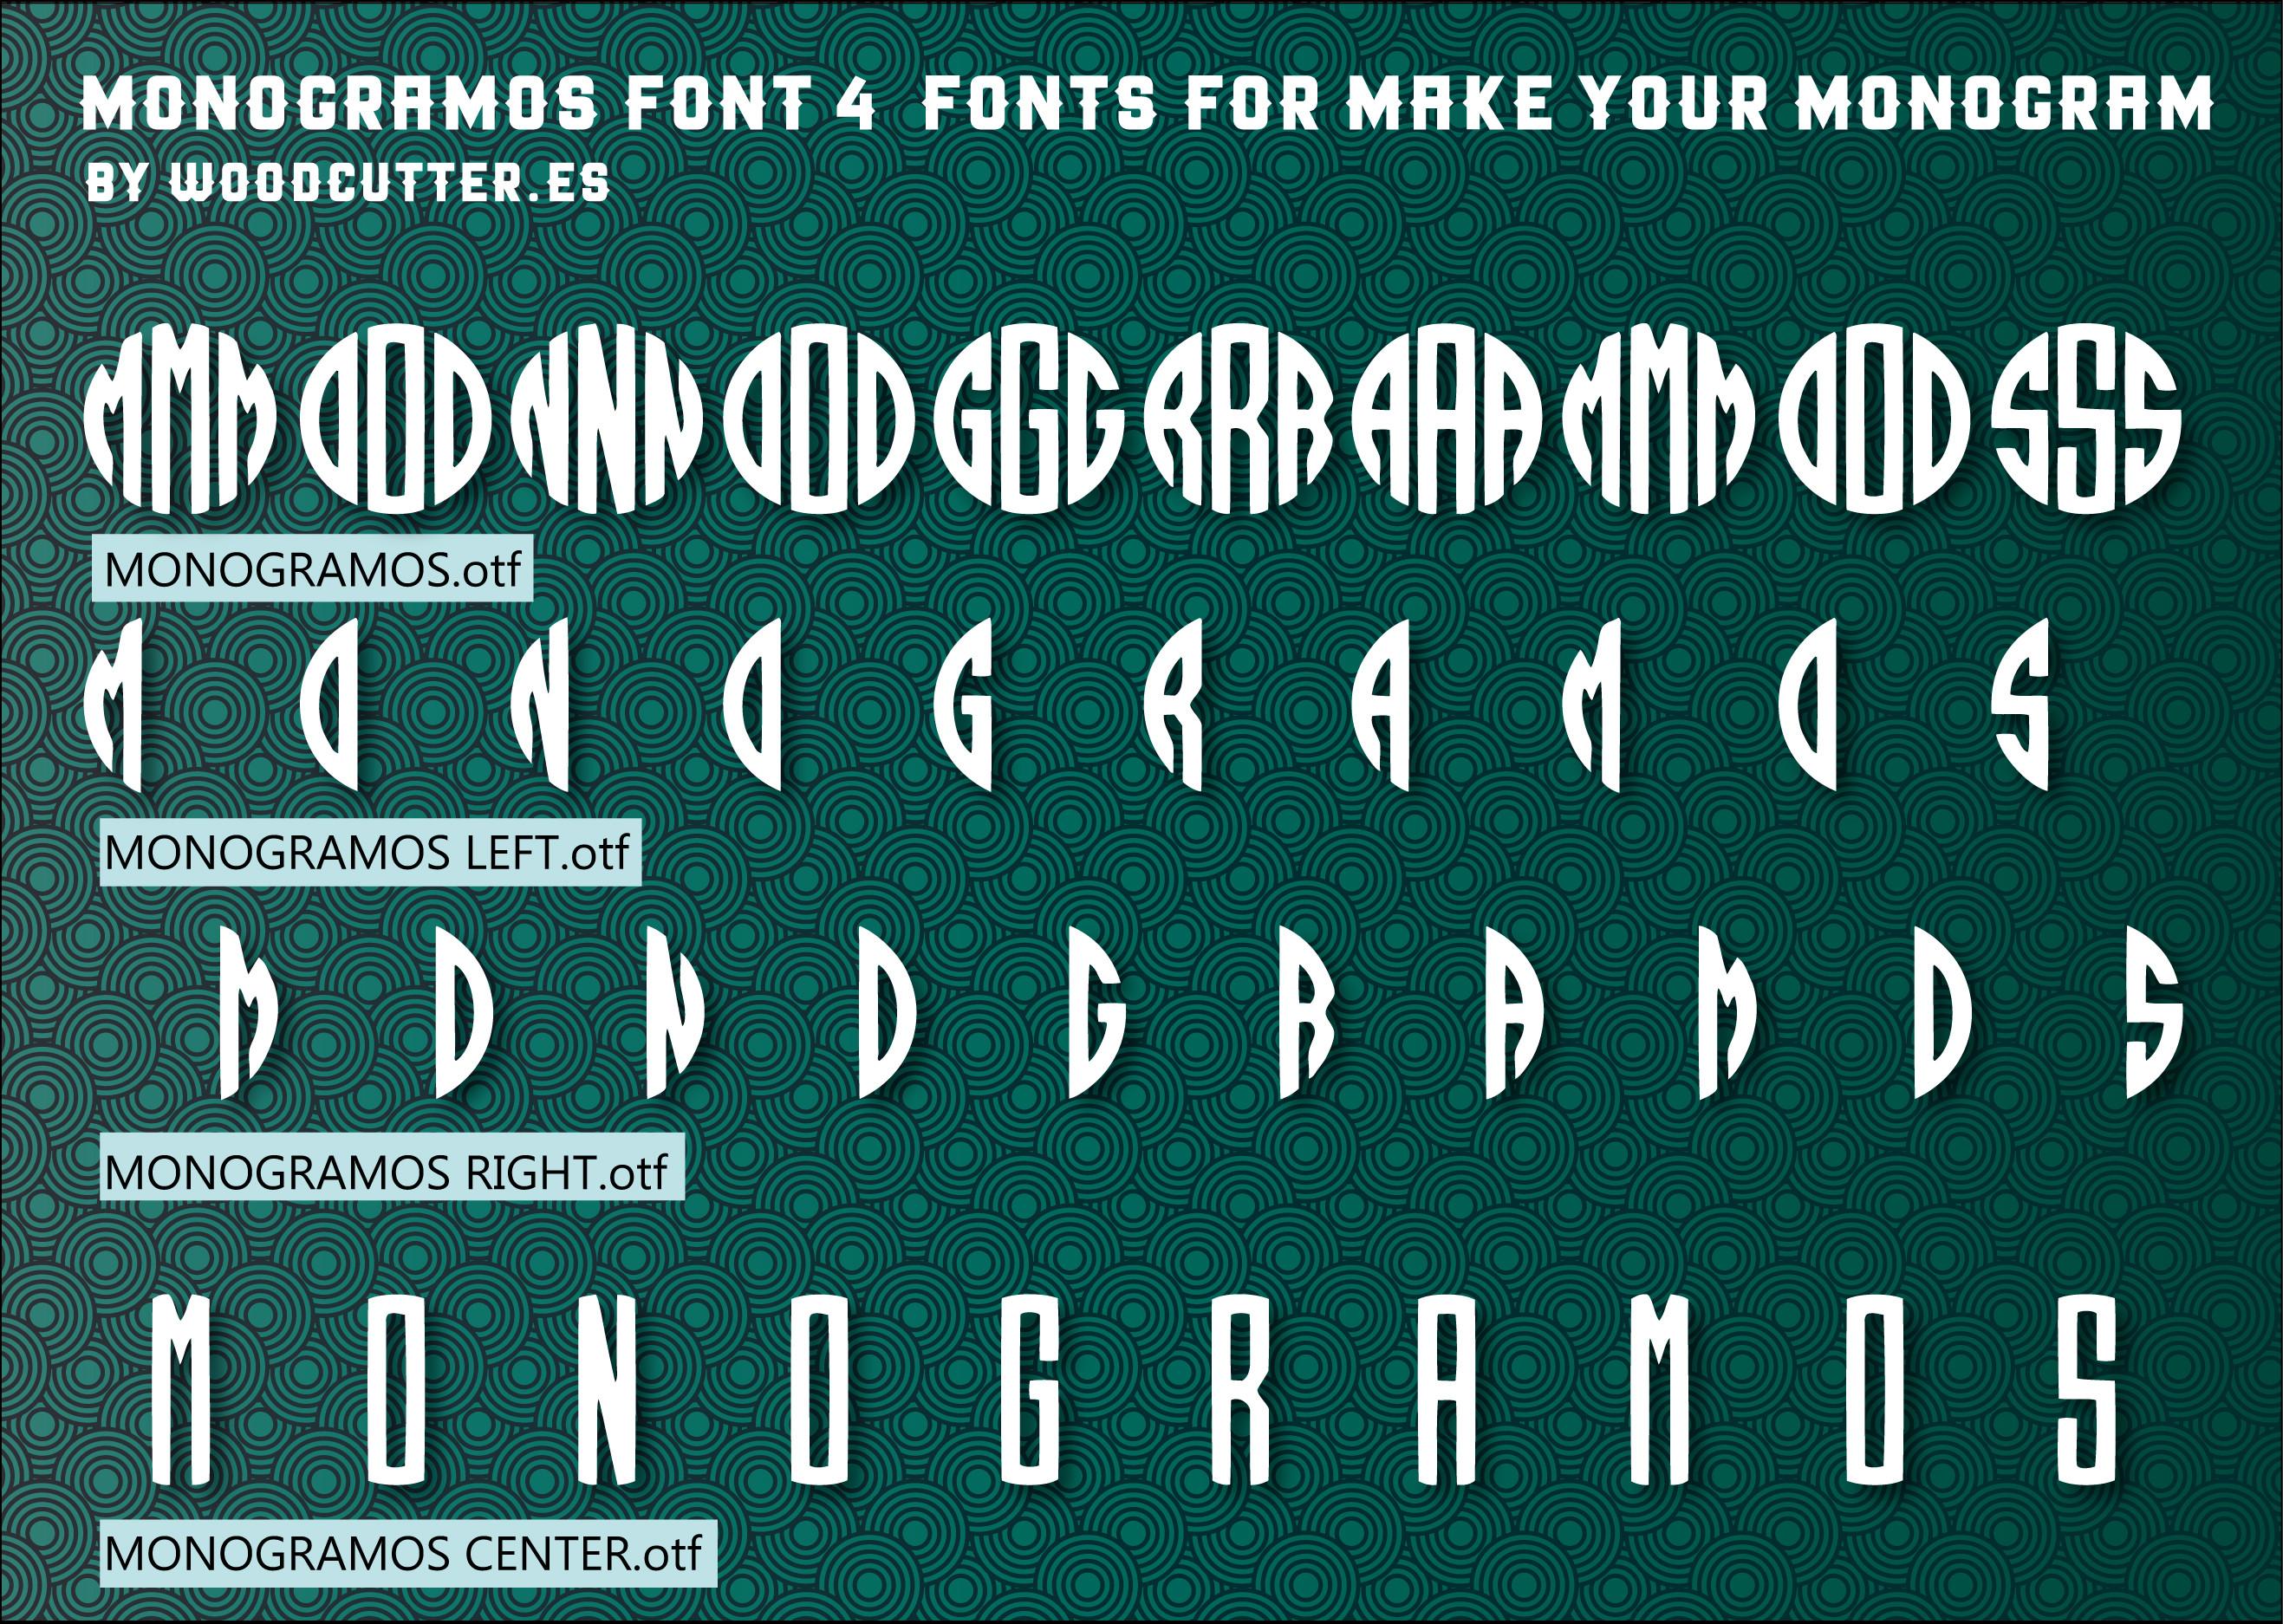 Monogramos Complete Font